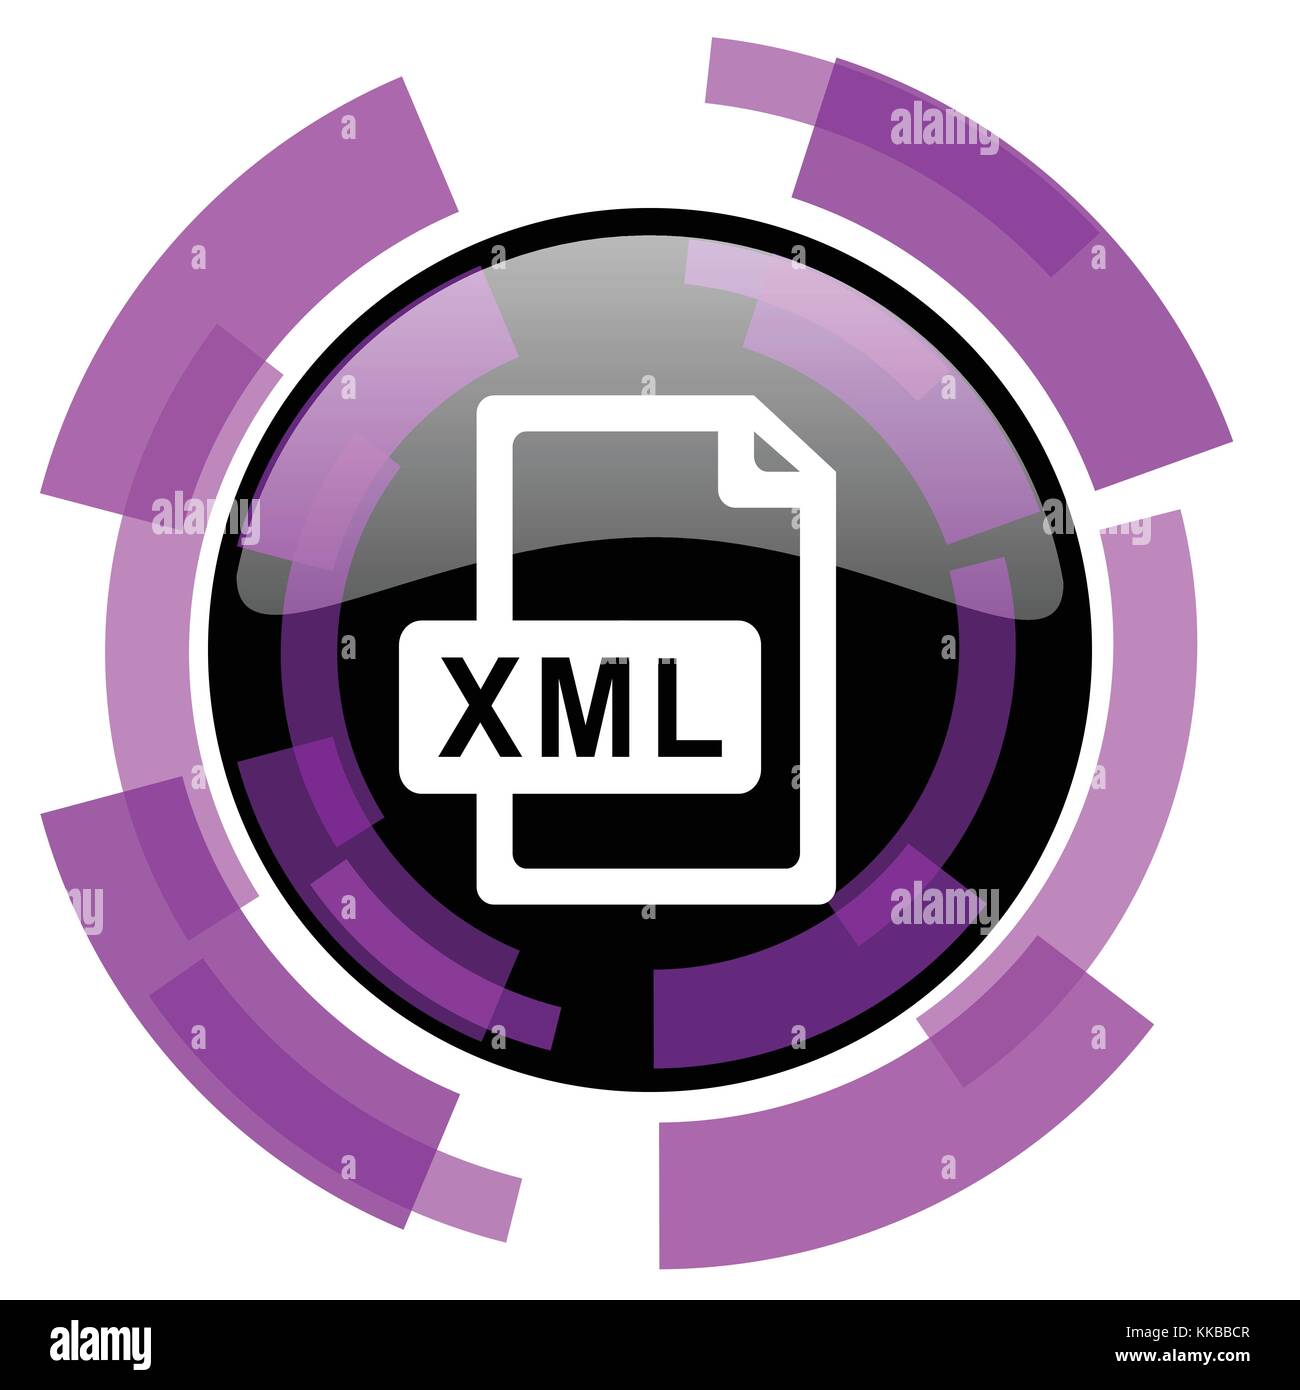 Biểu tượng vector đương đại của tệp XML với sắc hồng tím tạo nên một thiết kế tuyệt vời cho web và smartphone. Nhấp chuột vào ảnh liên quan để khám phá thêm về thiết kế biểu tượng XML độc đáo này. Translation: The modern vector icon of the XML file with pink violet creates an amazing design for web and smartphone. Click on the related image to discover more about this unique XML icon design. 